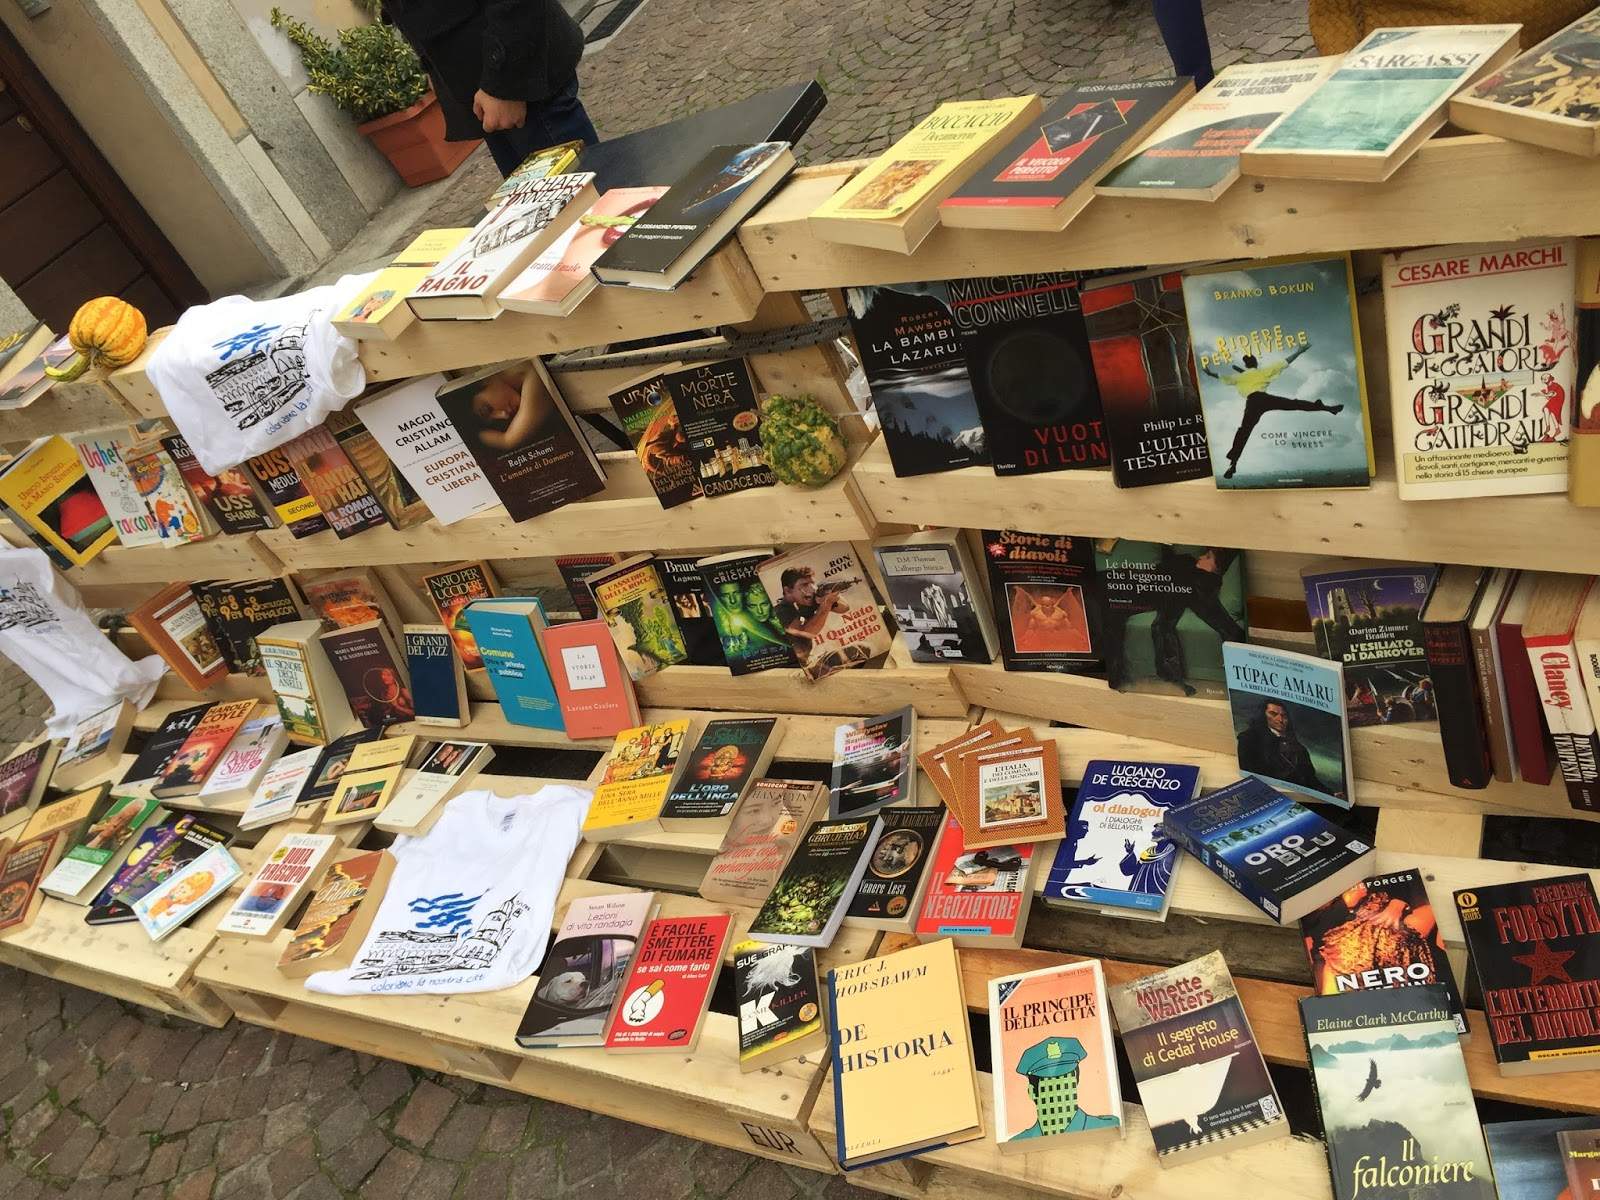 Tornano i libri del Polo Laico: Sabato 7 Ottobre a vigevano libri gratis in cambio di un’idea per la città